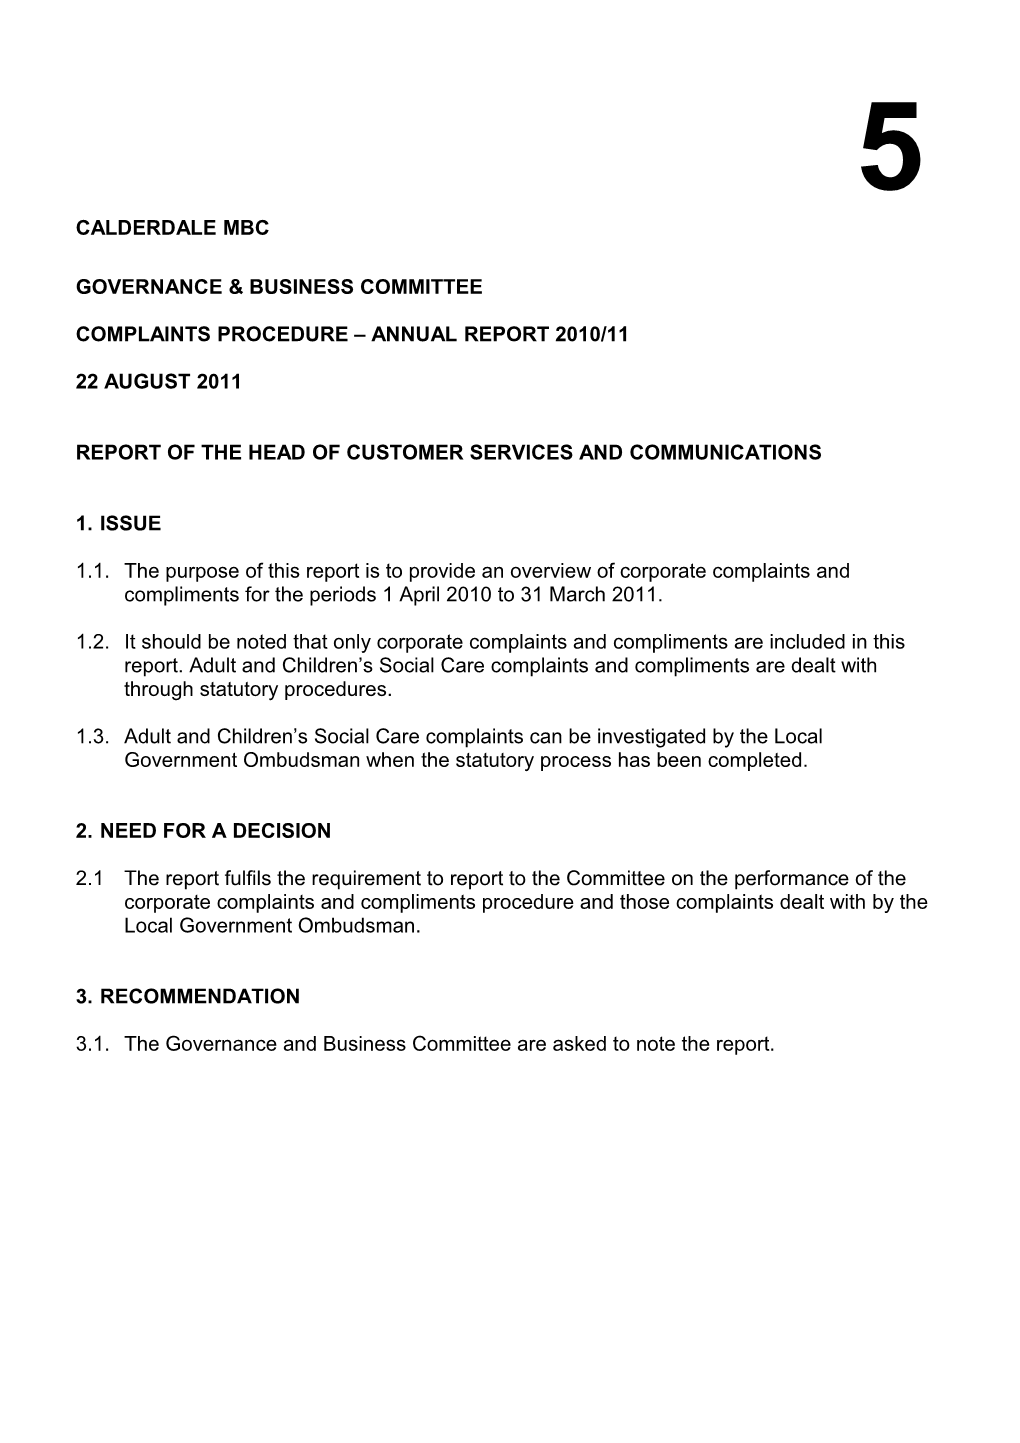 Complaints Procedure Annual Report 2010/11